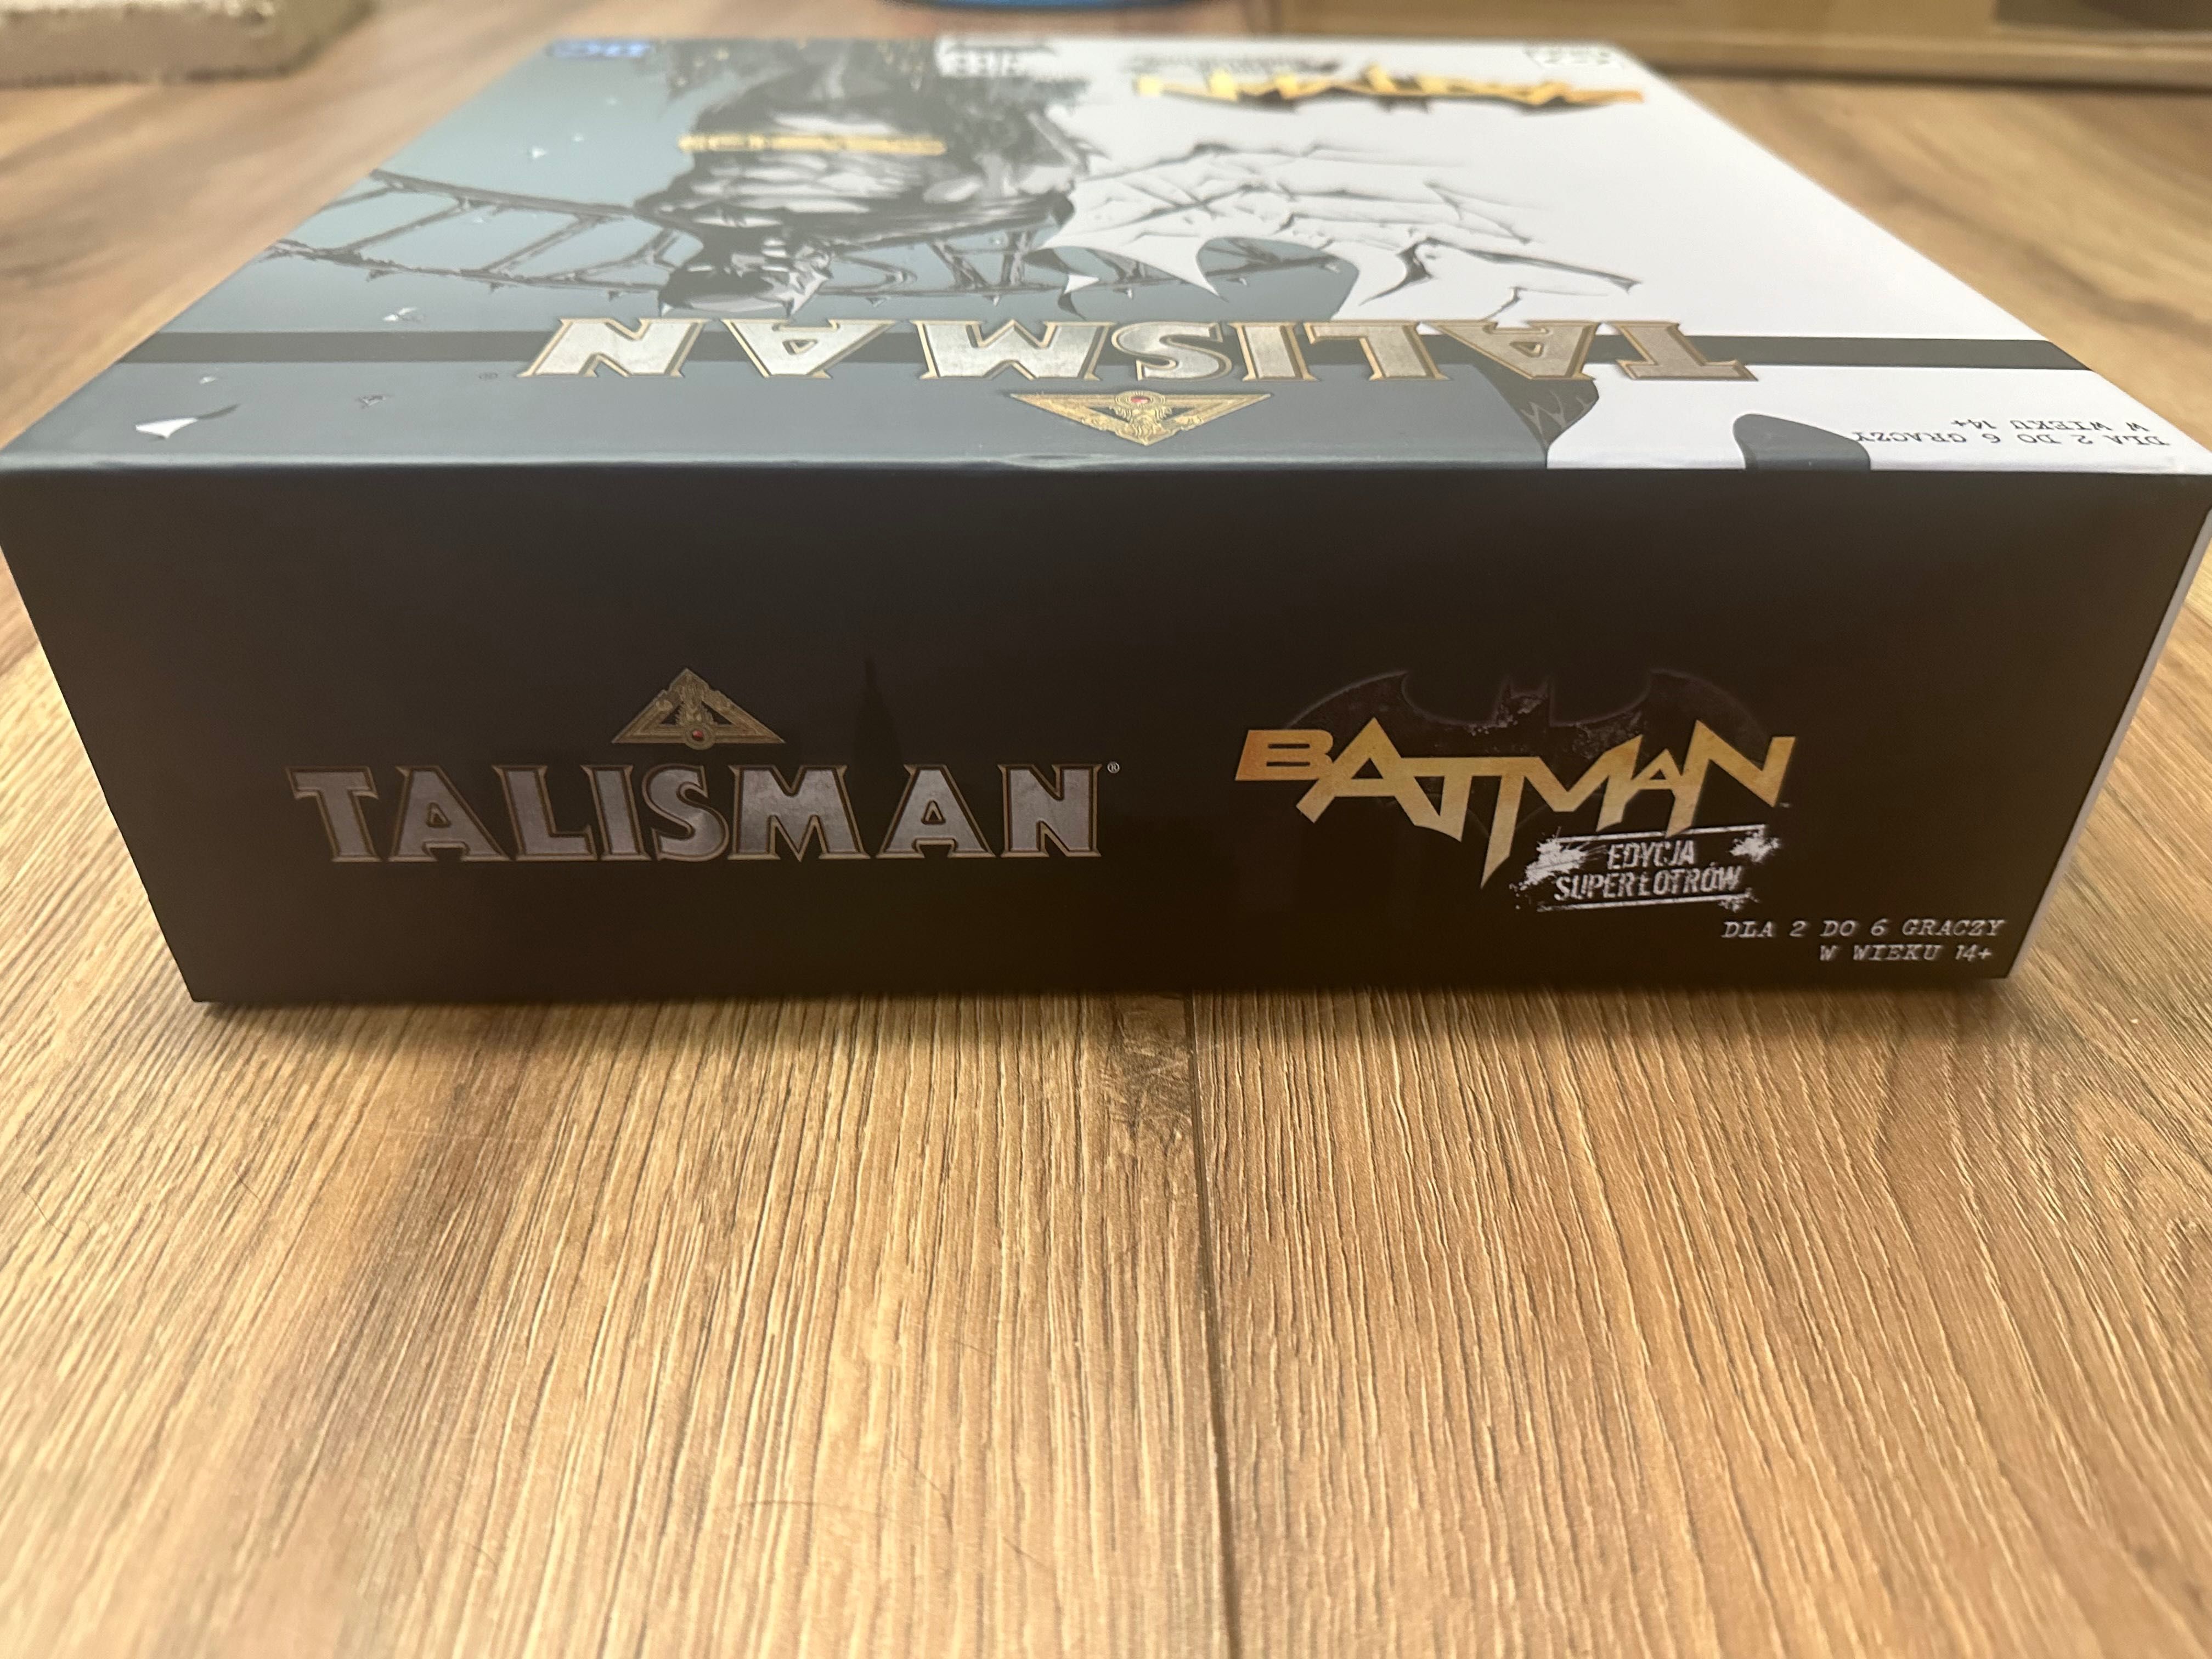 Talisman Batman Edycja Łotrów